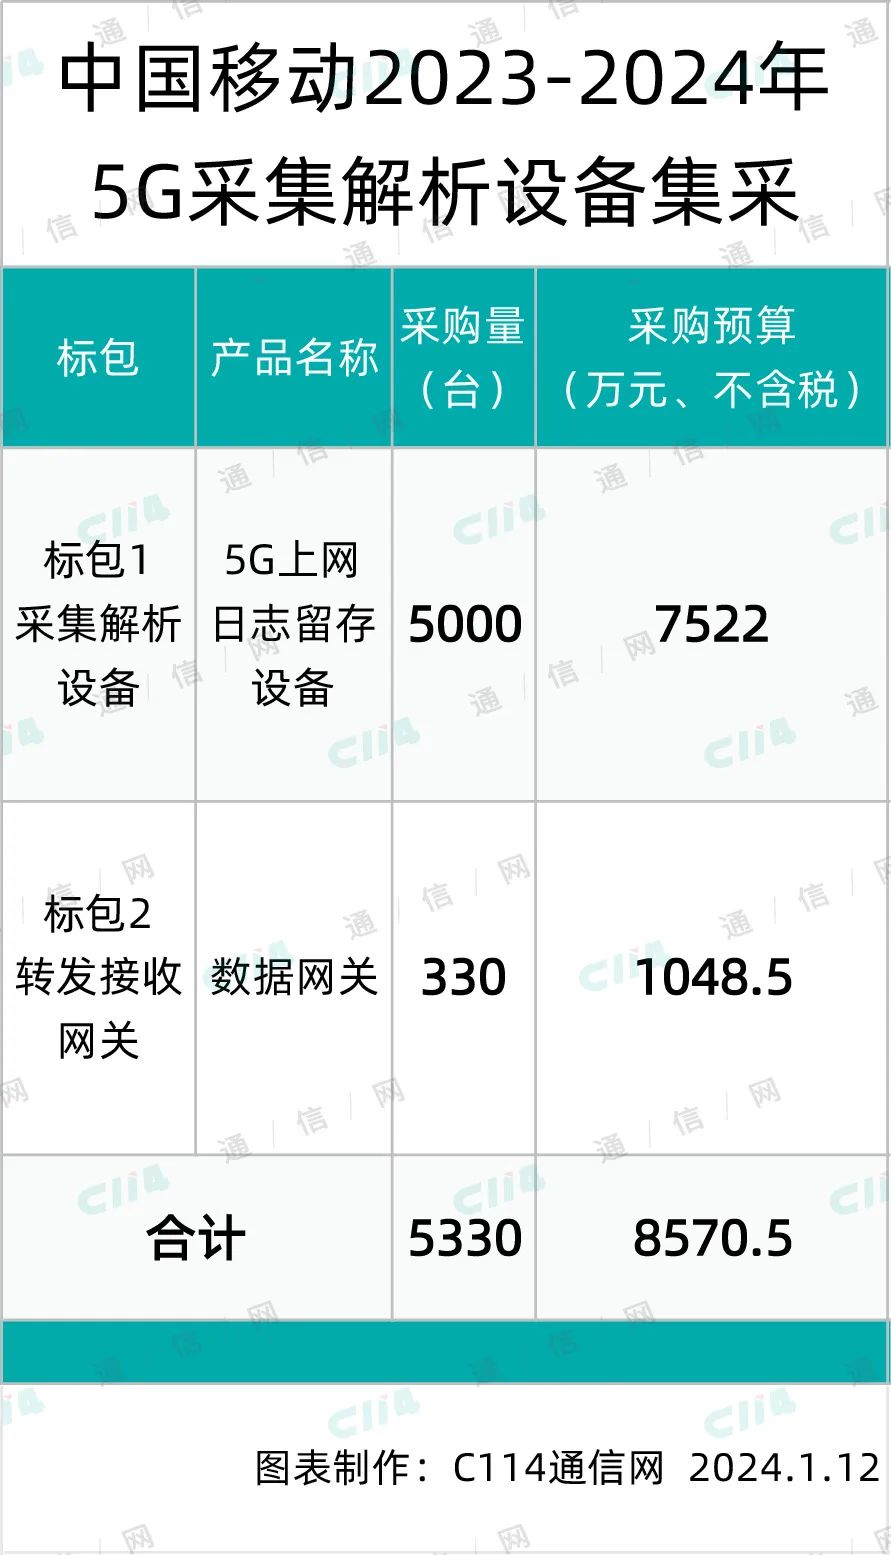 总预算8570.5万元！中国移动启动5G采集解析设备集采- C114通信网